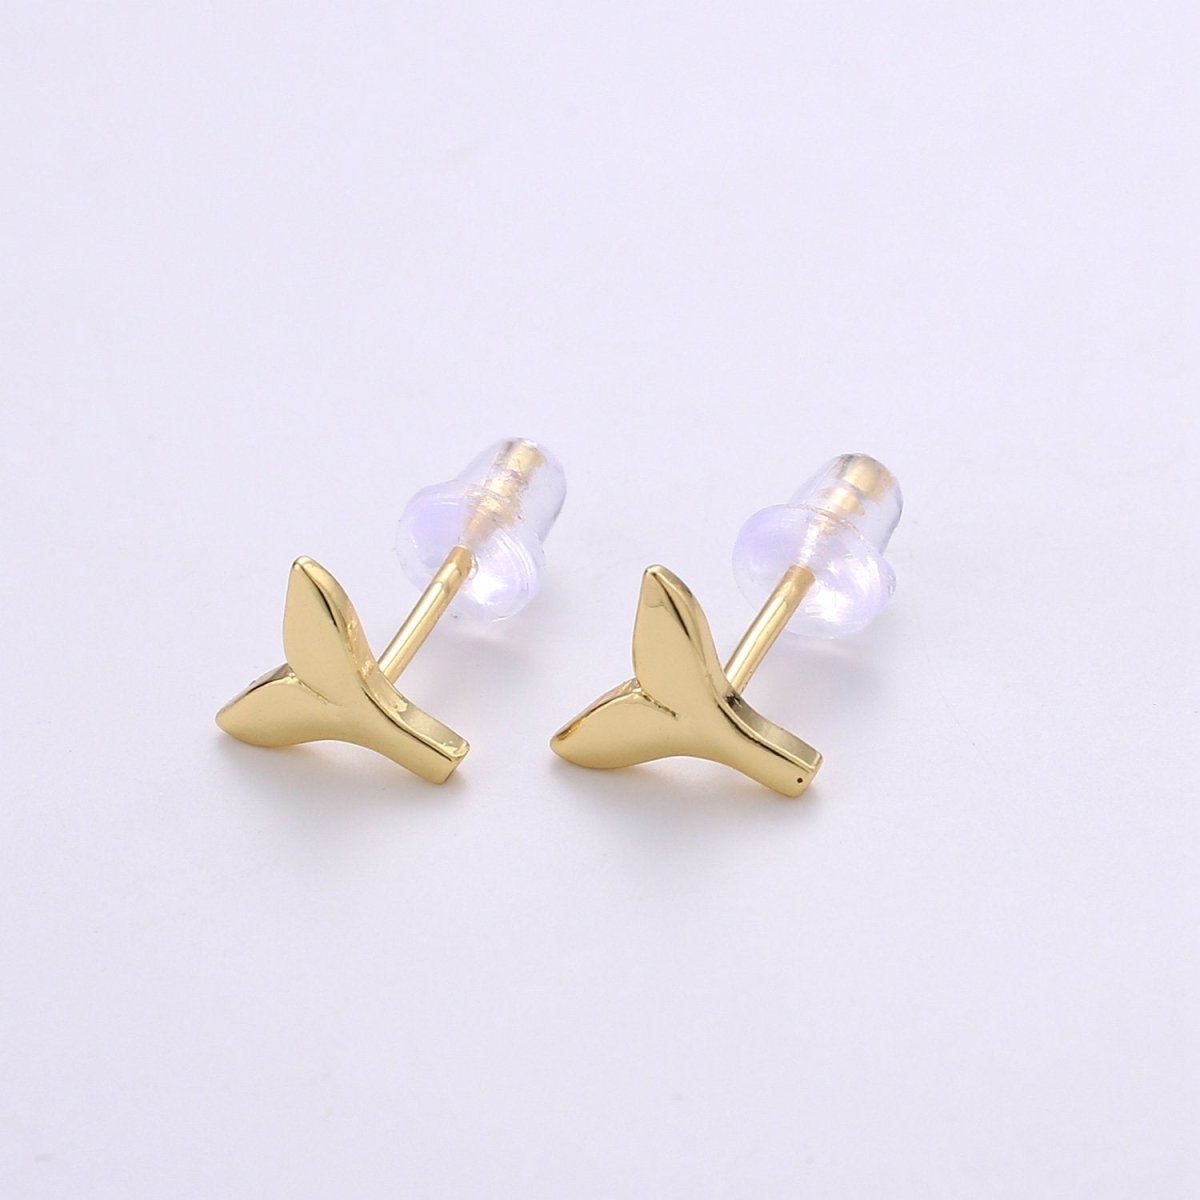 Dainty Whale Tail Stud Earring, Gold Fish Earring, Dainty Mermaid Earrings, Animal Studs, Minimalist Stud Earrings, Cartilage Earrings Q-290 - DLUXCA